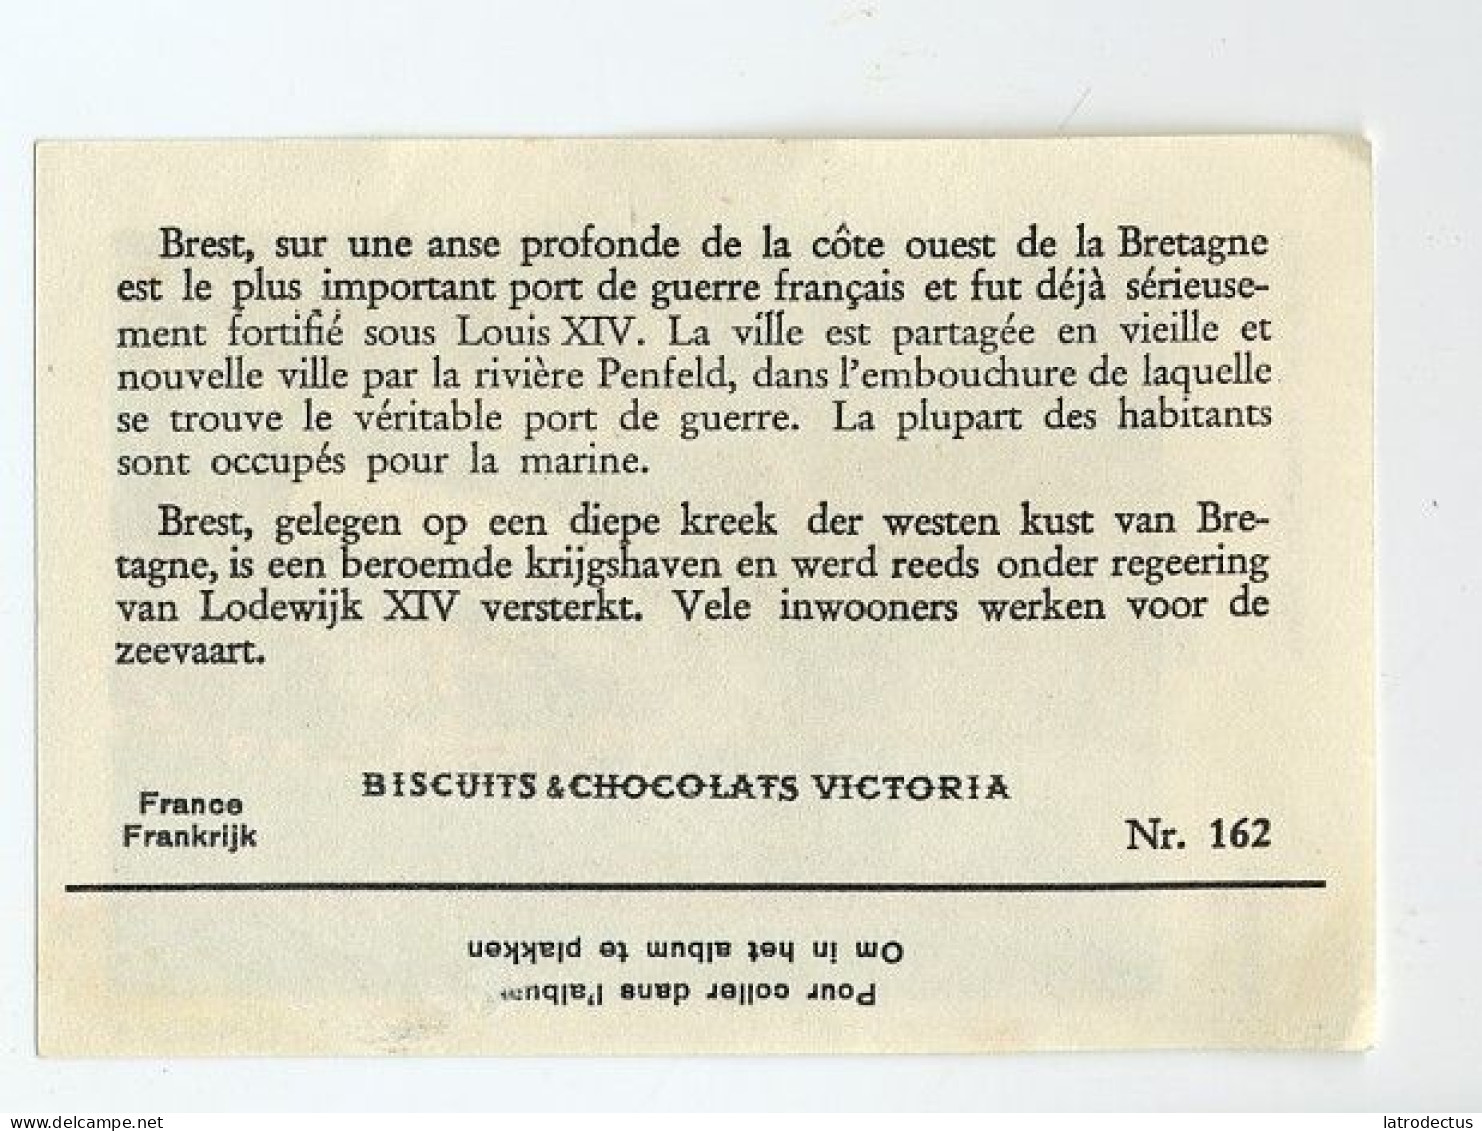 Victoria (1937) - 162 - France, Brest - Victoria